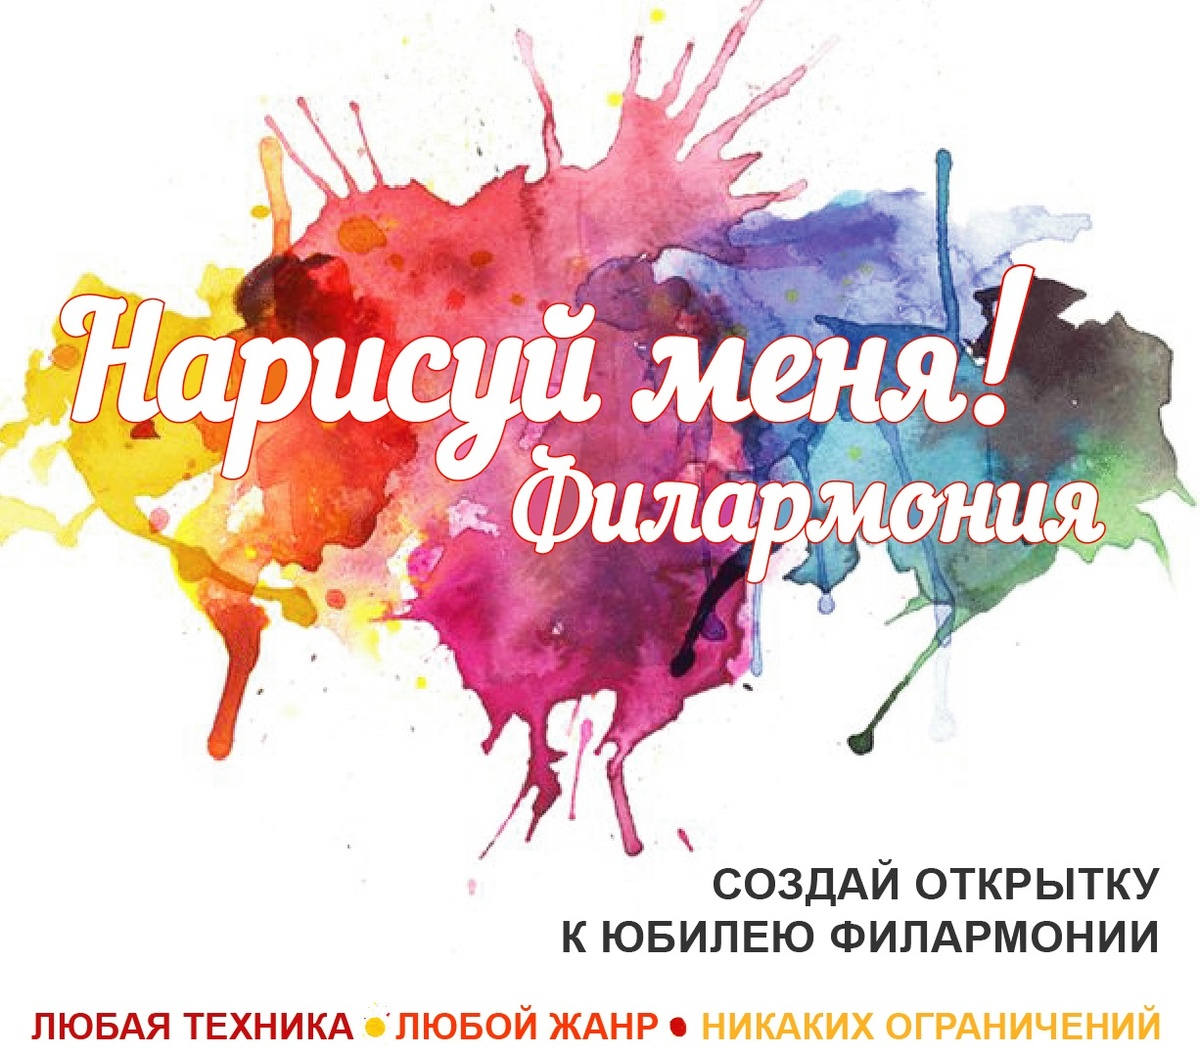 Конкурс иллюстраций в честь 80-летнего юбилея Нижегородской филармонии